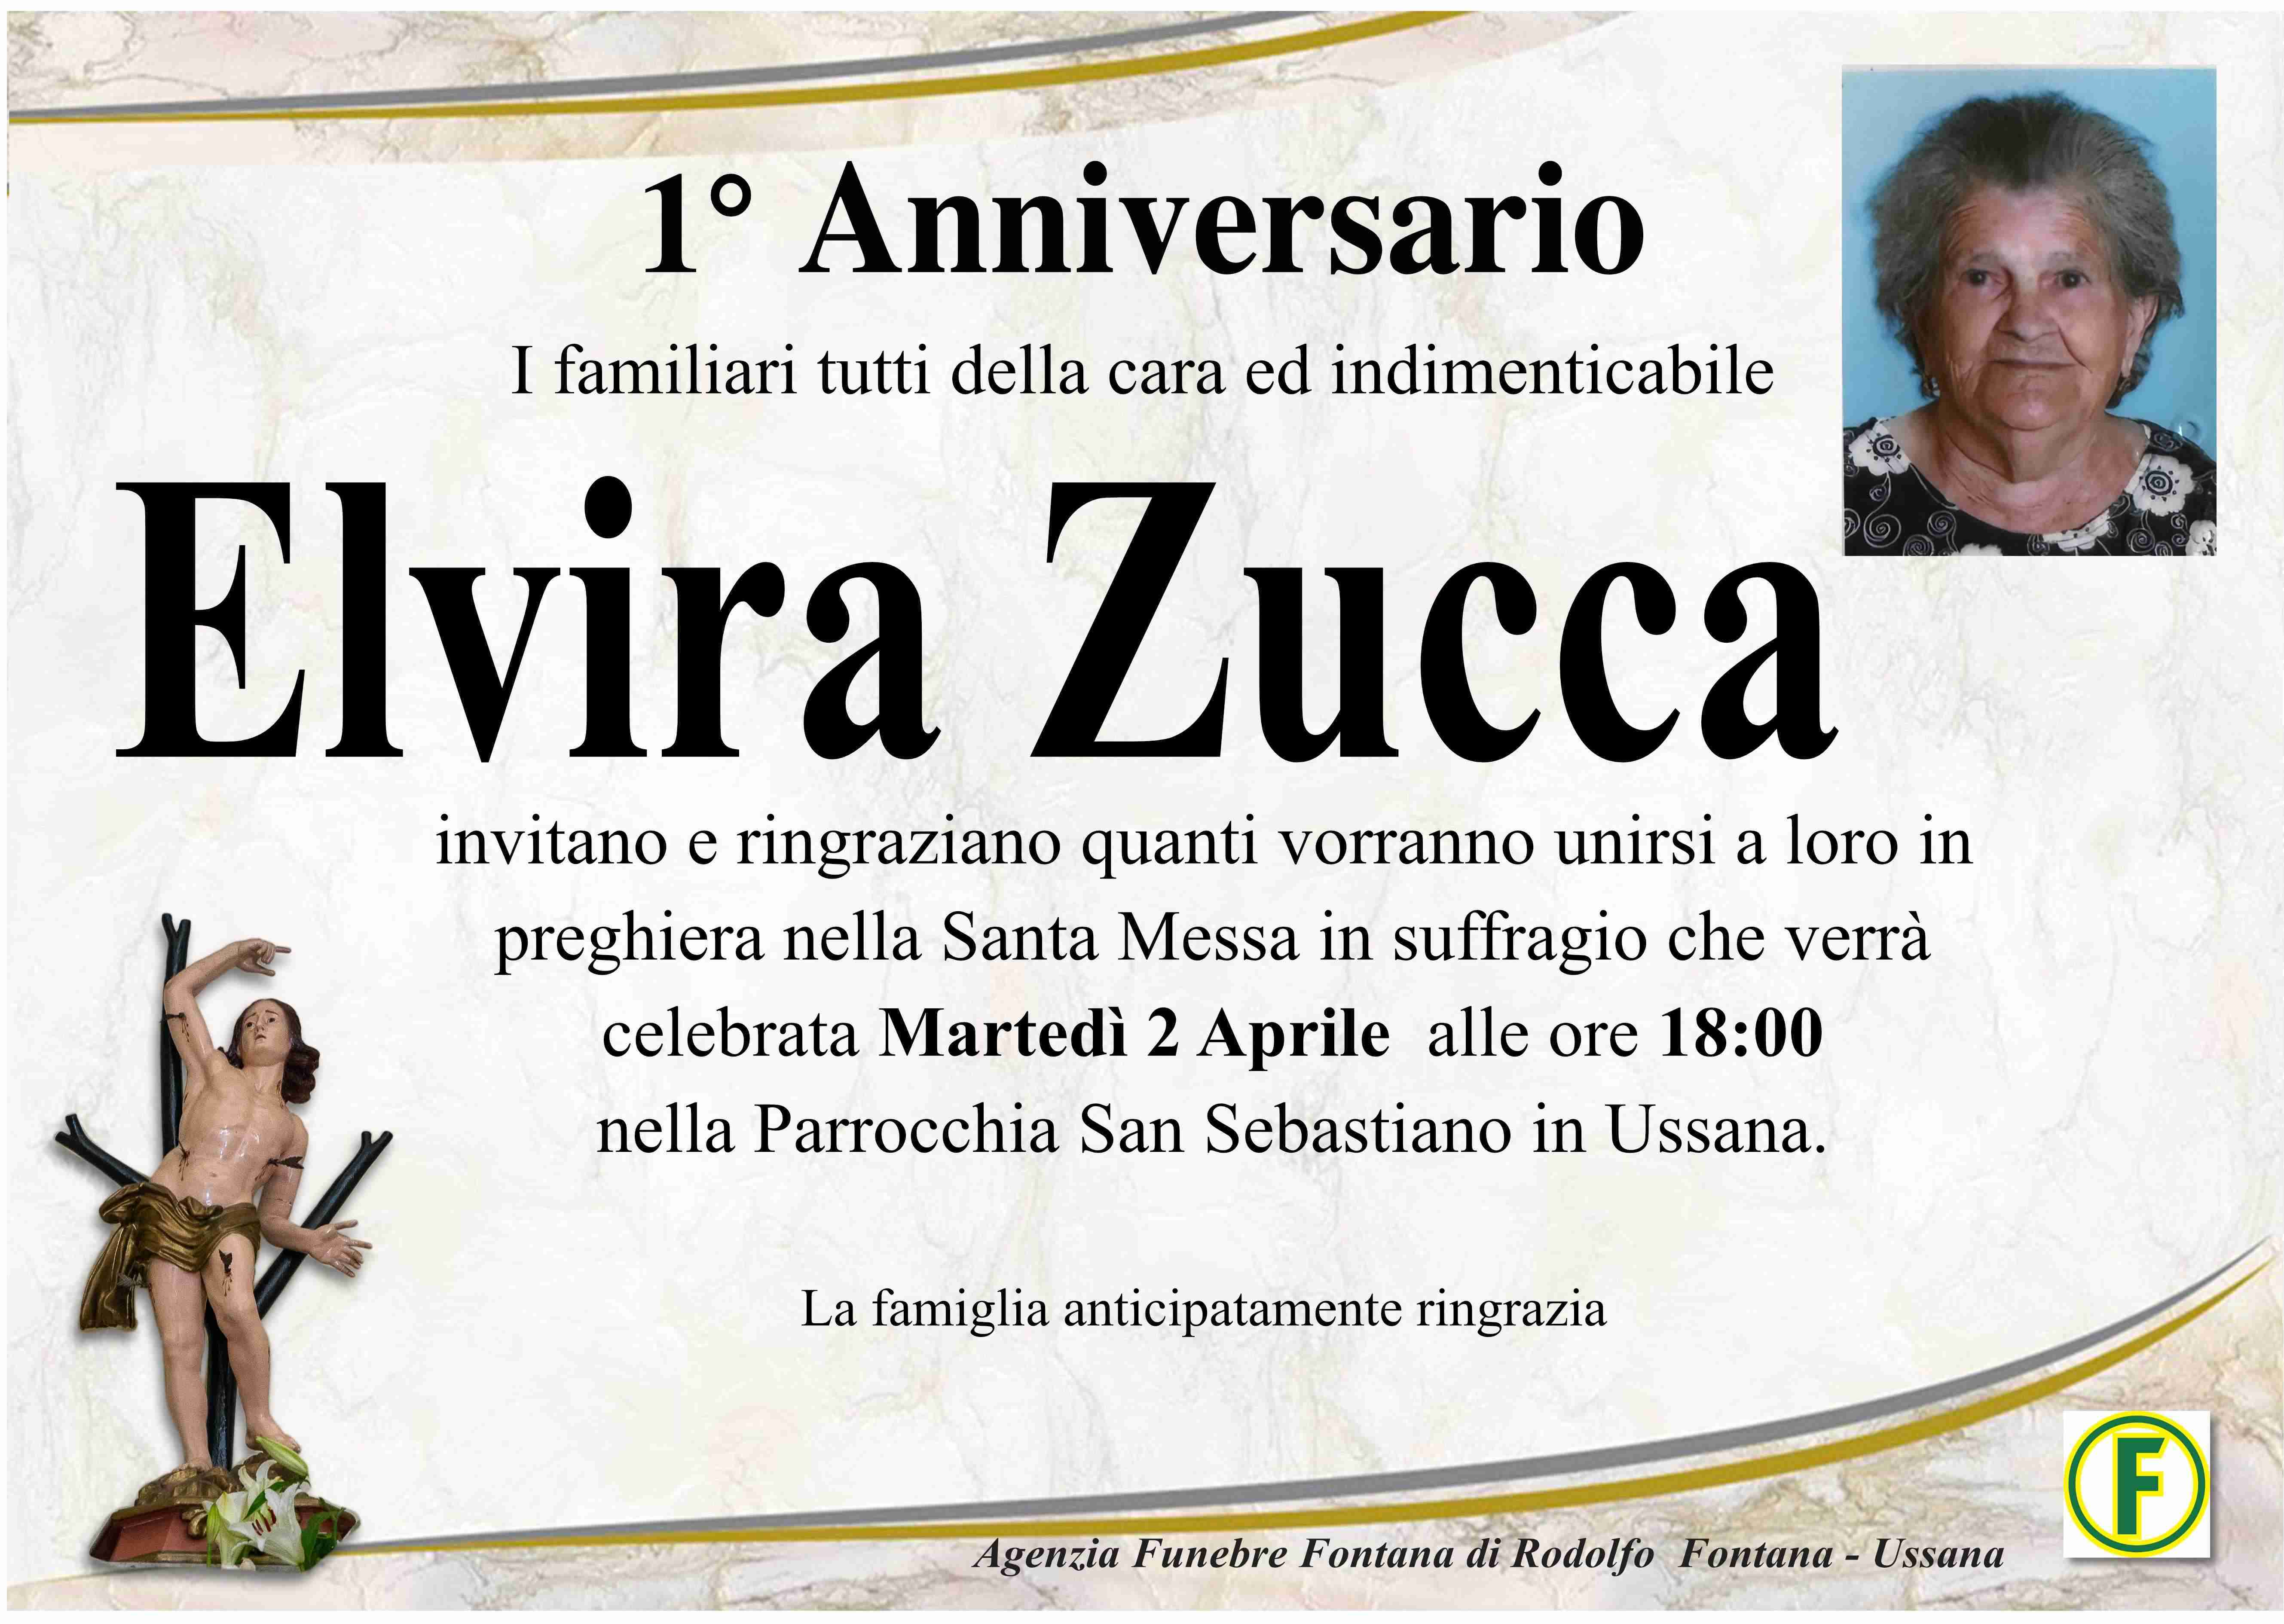 Elvira Zucca